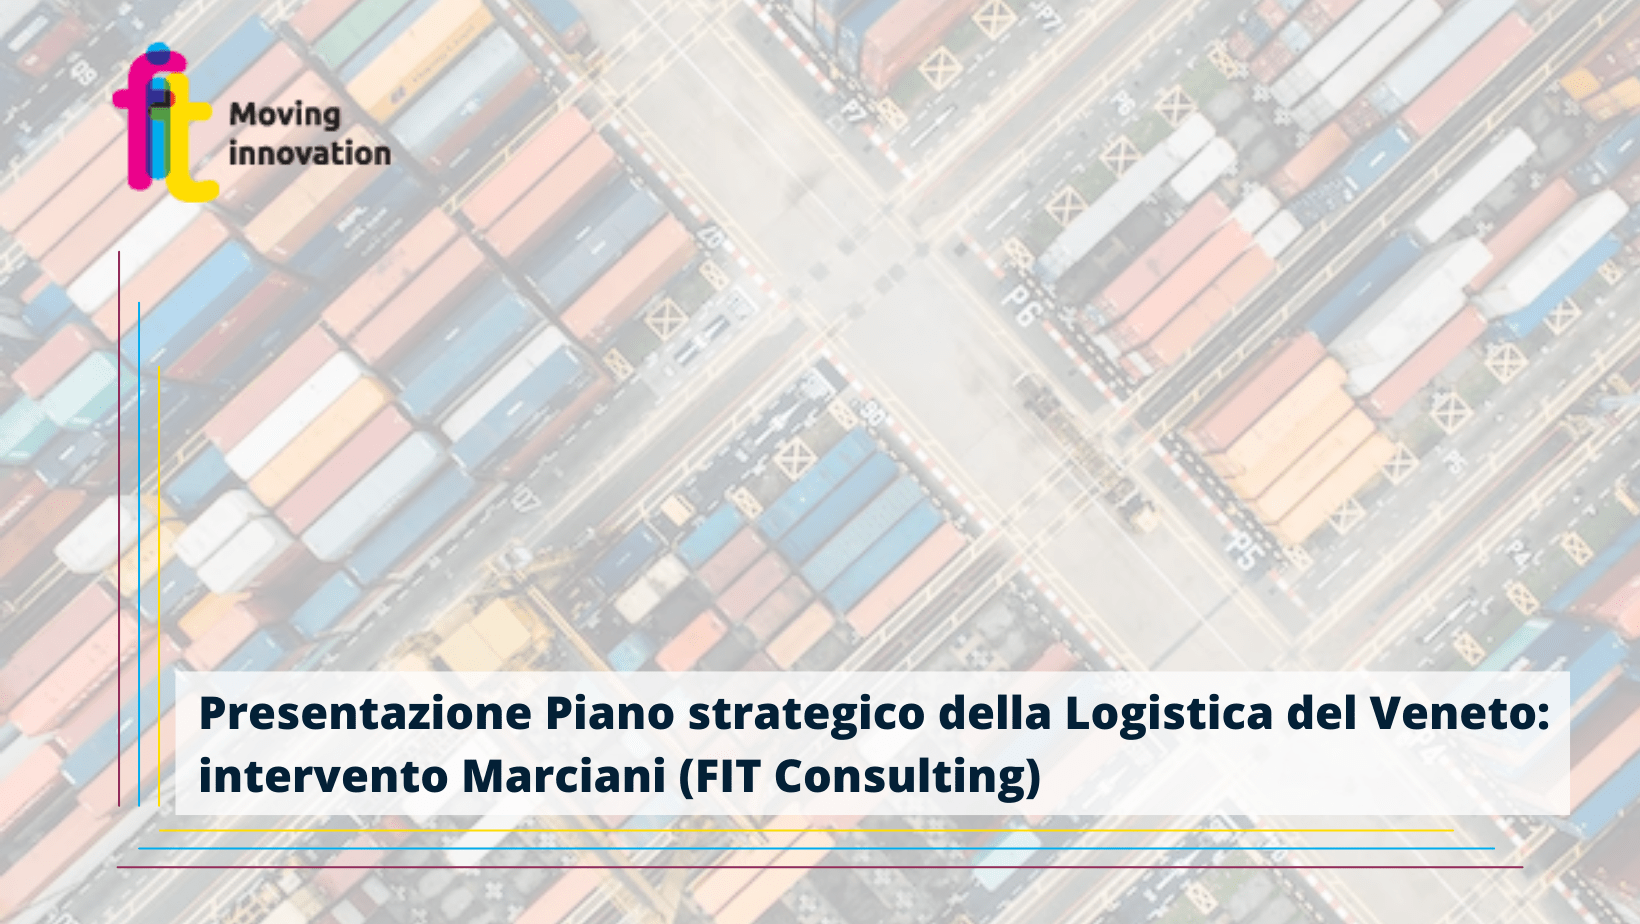 Presentata la proposta del Piano strategico della Logistica del Veneto. Marciani, FIT Consulting: “Serve costruire un processo di partecipazione e coinvolgimento che metta al centro la Logistica e la sua ottimizzazione”.